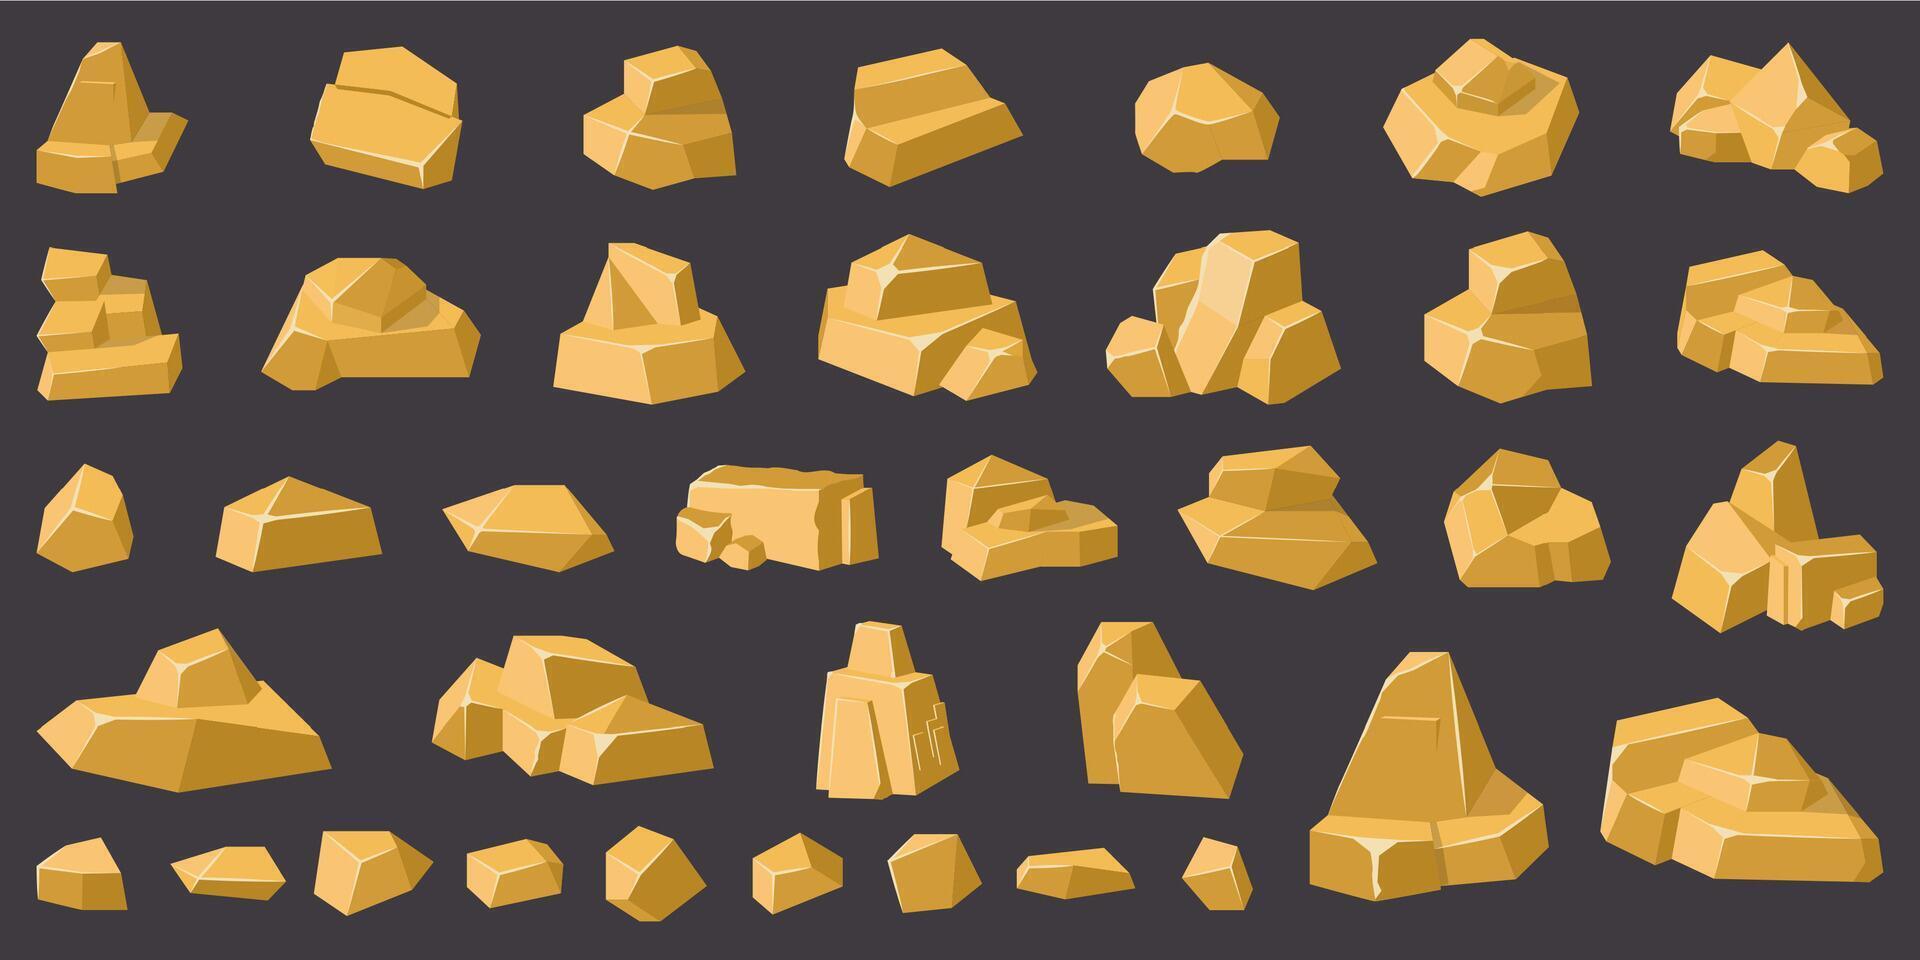 gyllene rocks. guld geologi berg sten, sten grus, stenar lugg, spel design gyllene stenar isolerat vektor illustration ikoner uppsättning